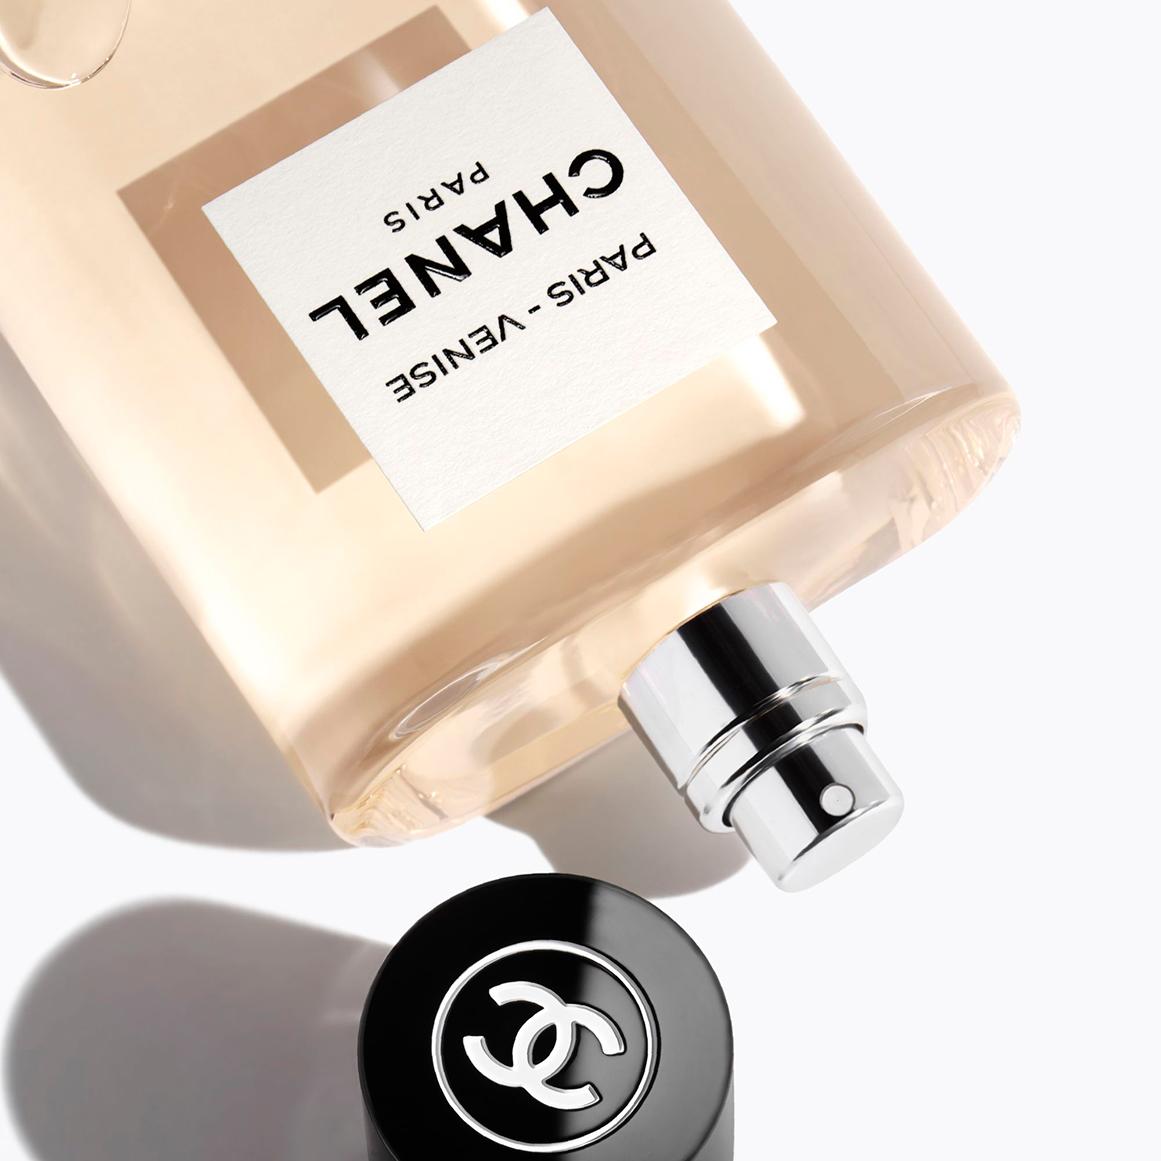 Fragrance Review: Chanel – Les Eaux de Chanel – A Tea-Scented Library